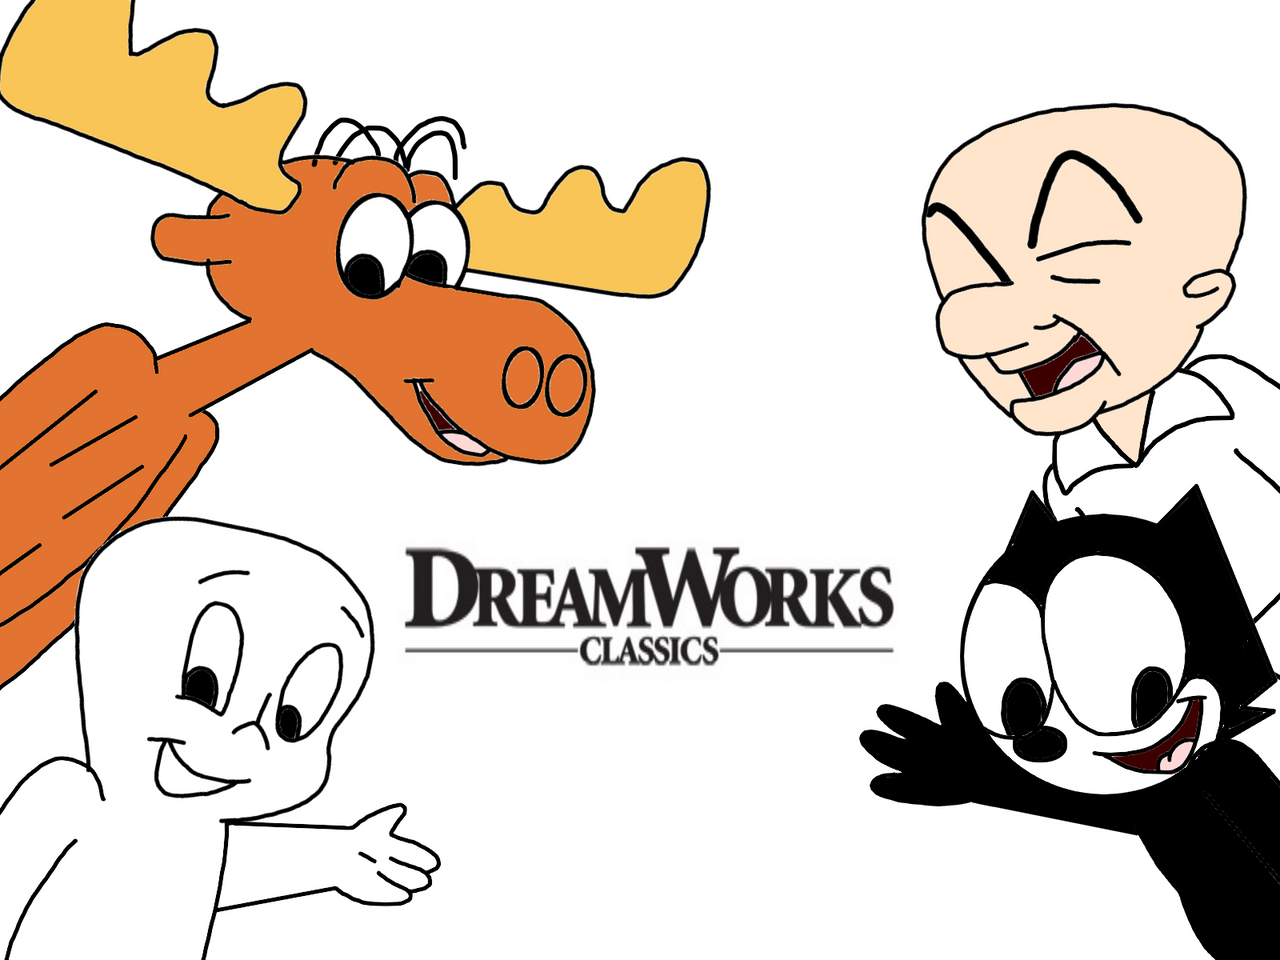 DreamWorks Classics characters